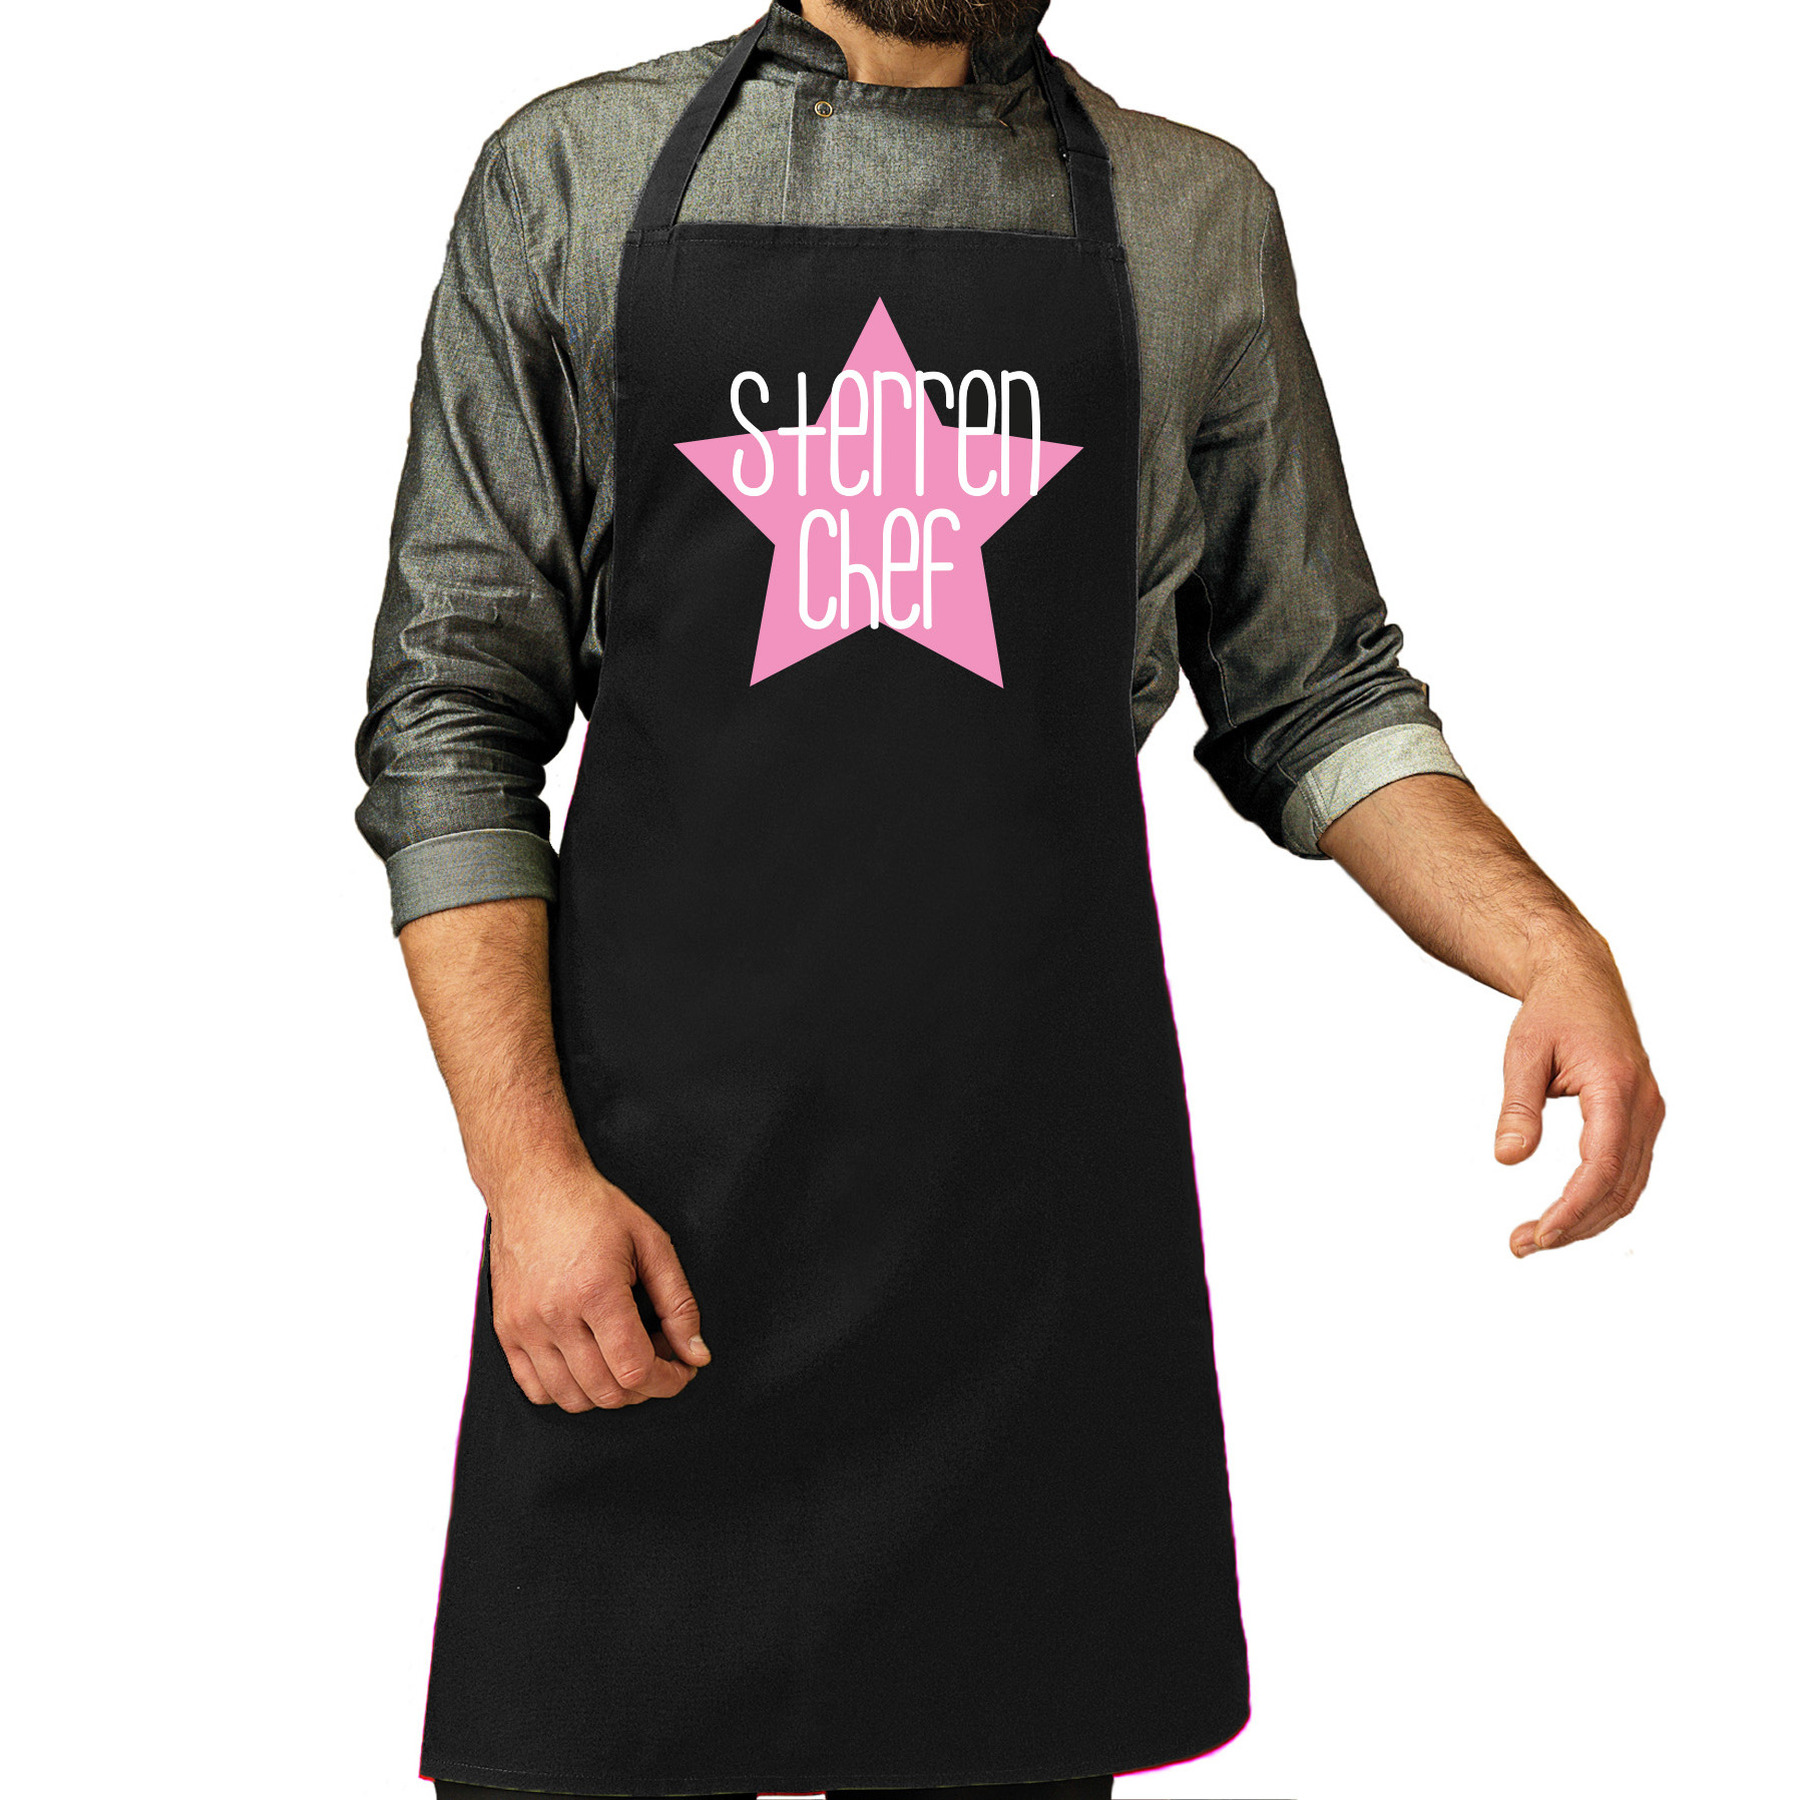 Cadeau schort voor heren sterren chef roze keukenschort barbecue keukenprins